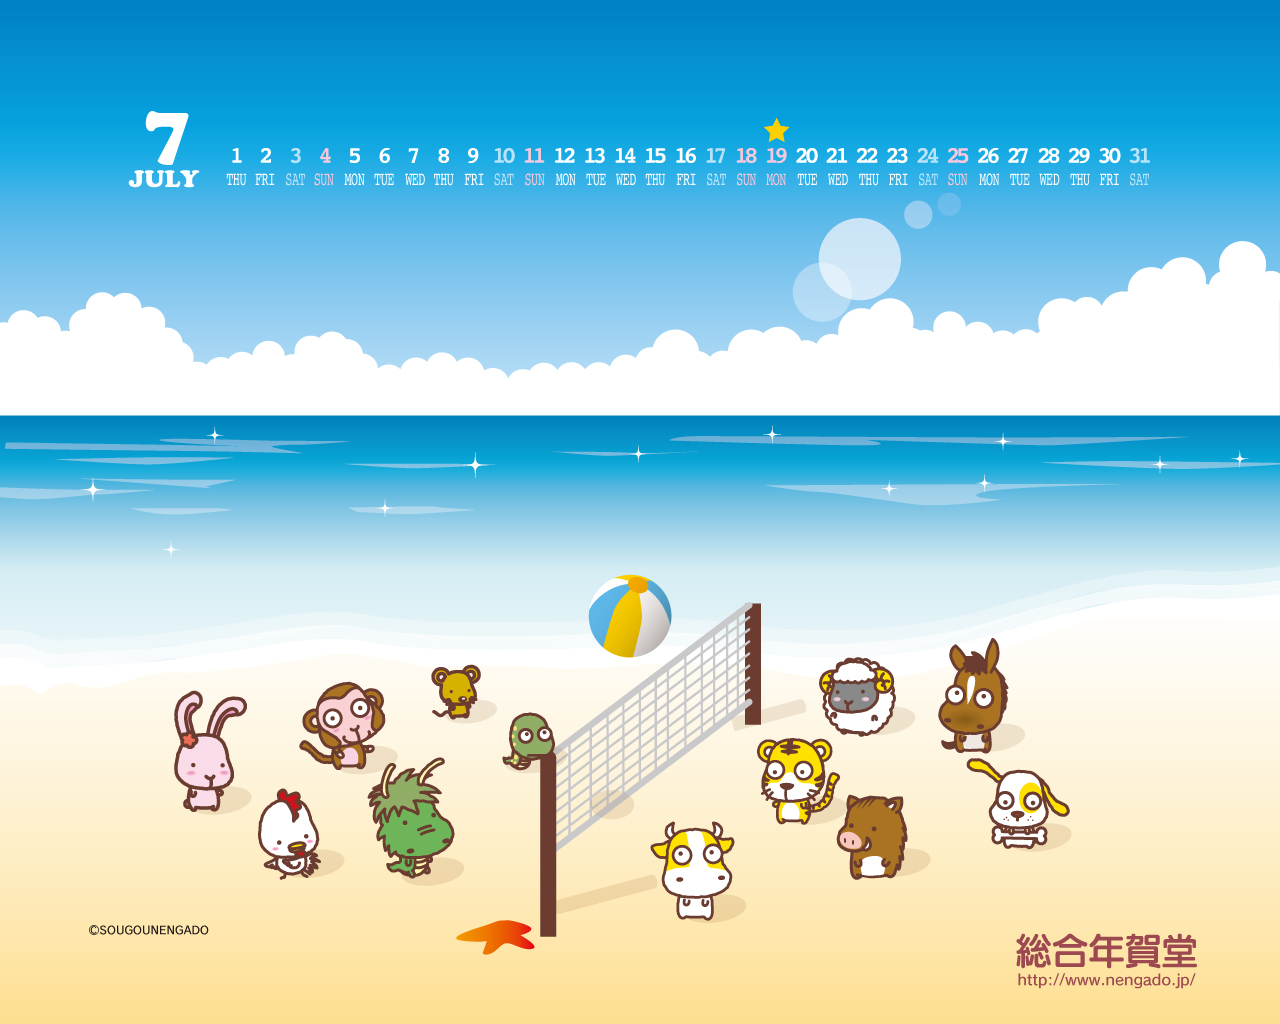 年賀状印刷 総合年賀堂スタッフブログ 7月の壁紙 海でビーチバレー